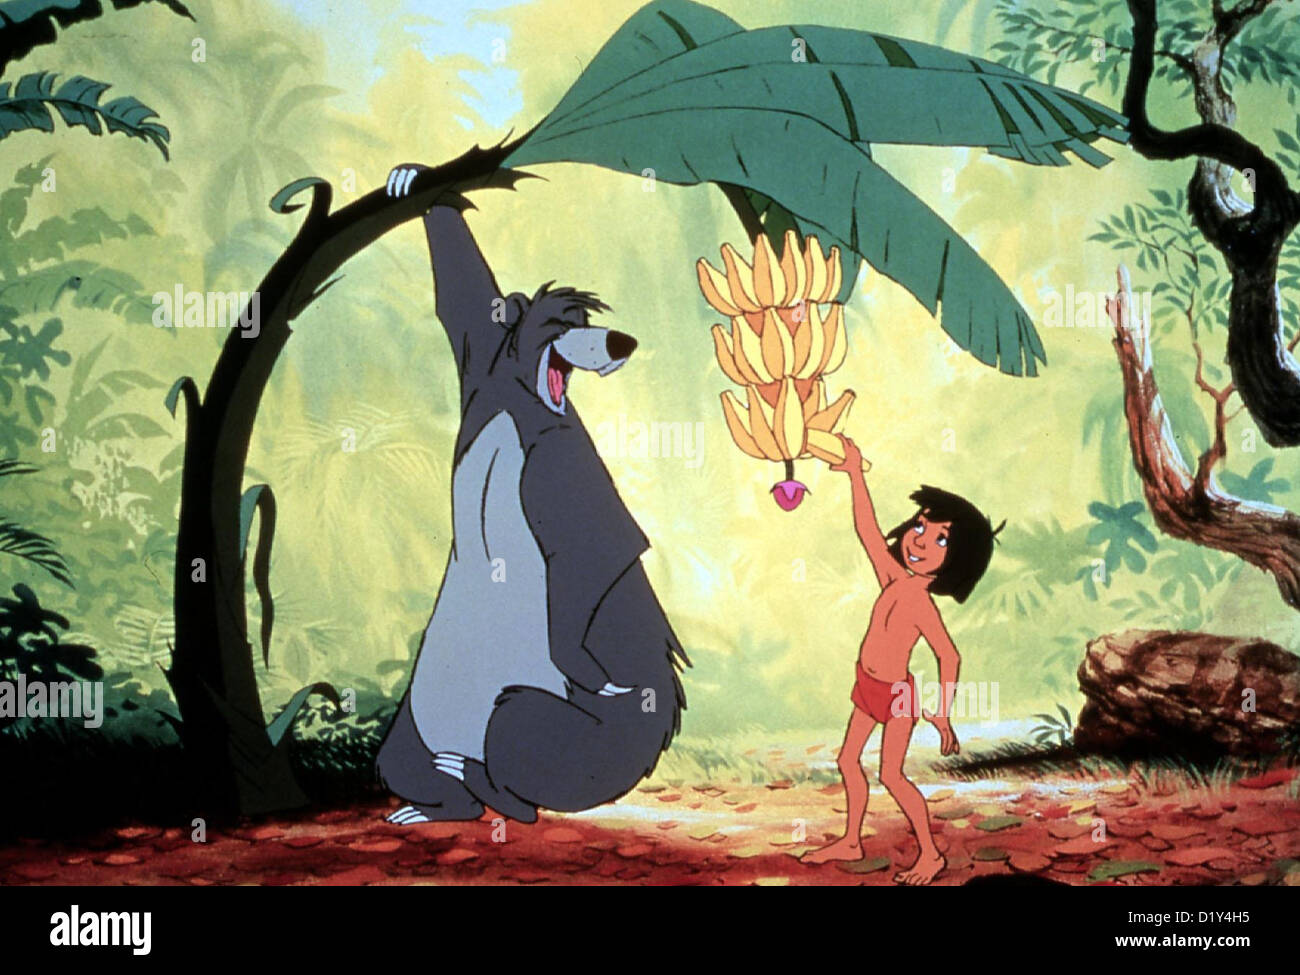 Das Dschungelbuch   Jungle Book, The   Mowgli mit Baloo, dem Baeren. *** Local Caption *** 1967  -- Stock Photo